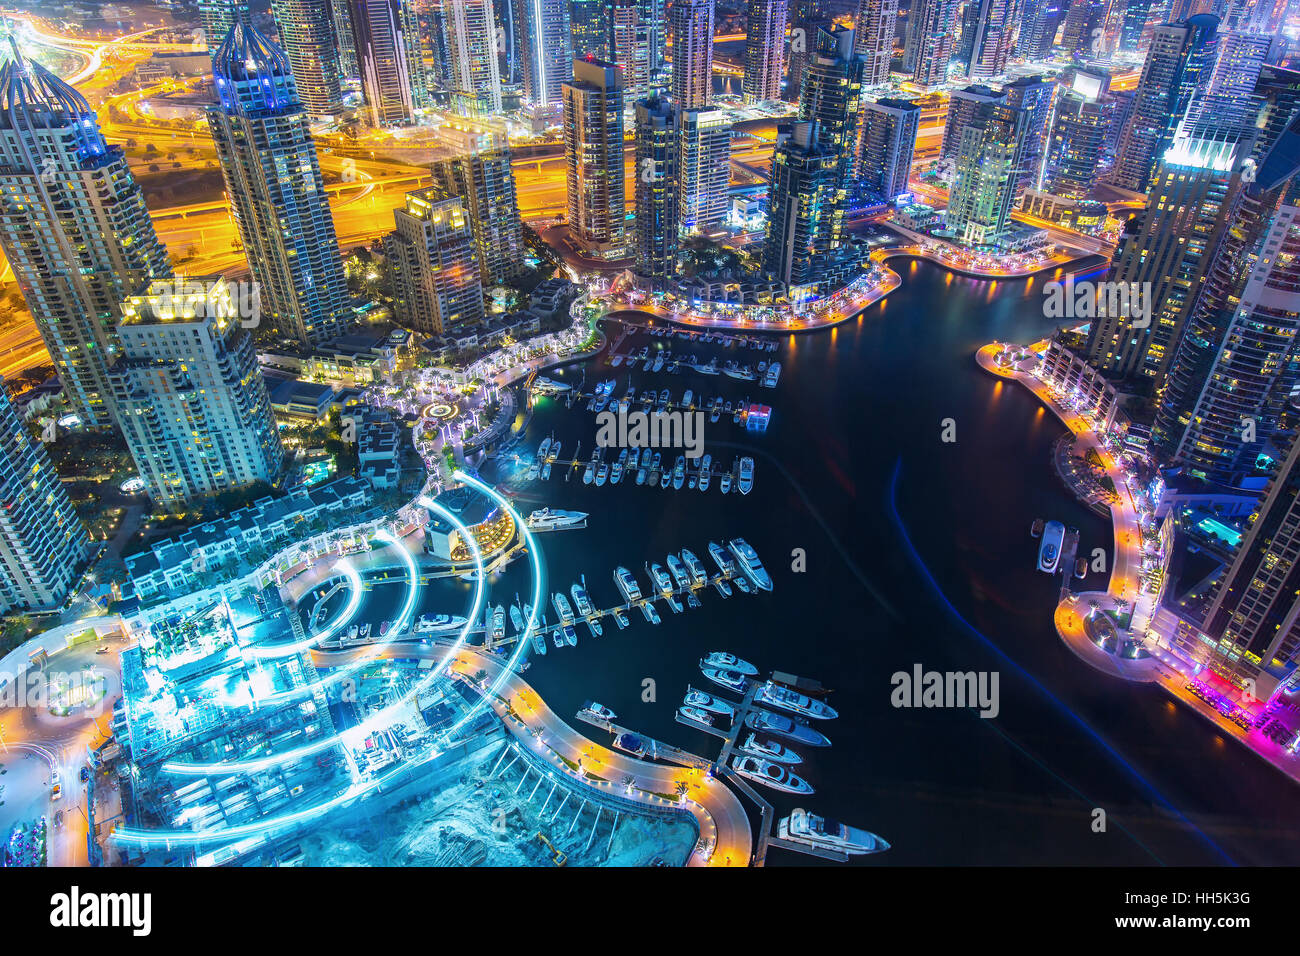 Dubaï, Émirats arabes unis - février 29, 2016 : Avis sur nuit de luxe en surbrillance de la Marina de Dubaï gratte-ciel,Bay et de la promenade à Dubaï Banque D'Images